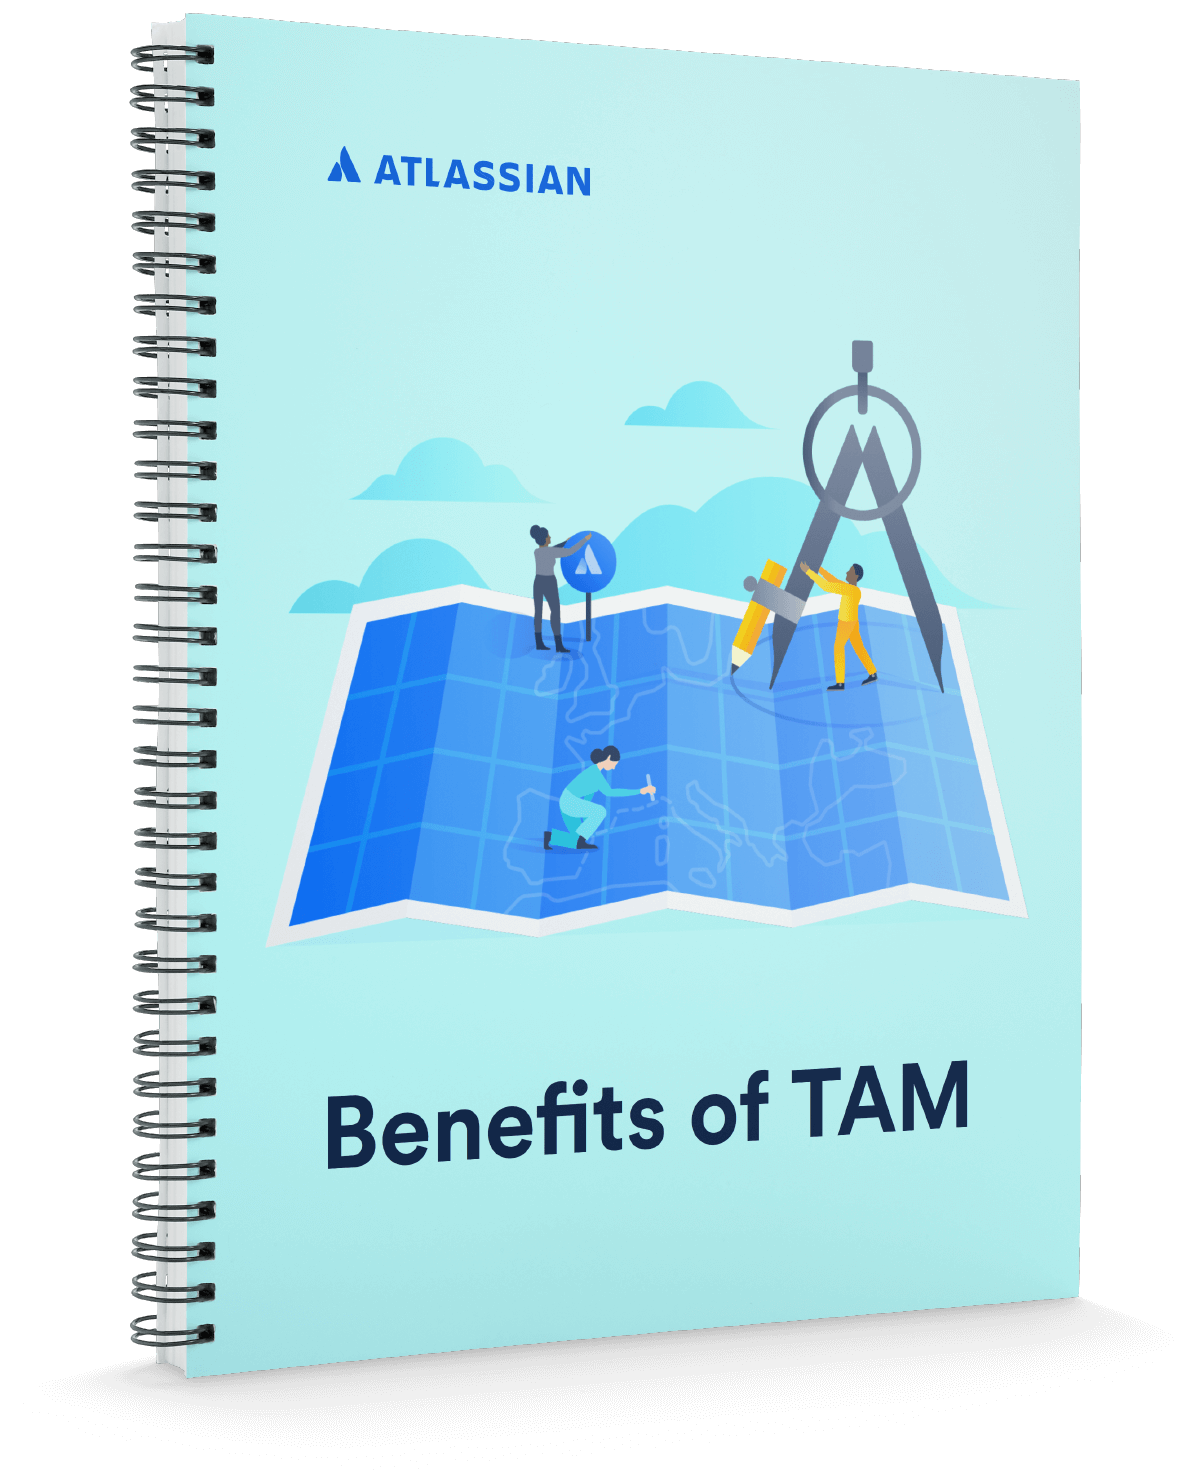 Titelseite eines Notizbuchs: "Benefits of TAM" (Vorteile eines TAM)